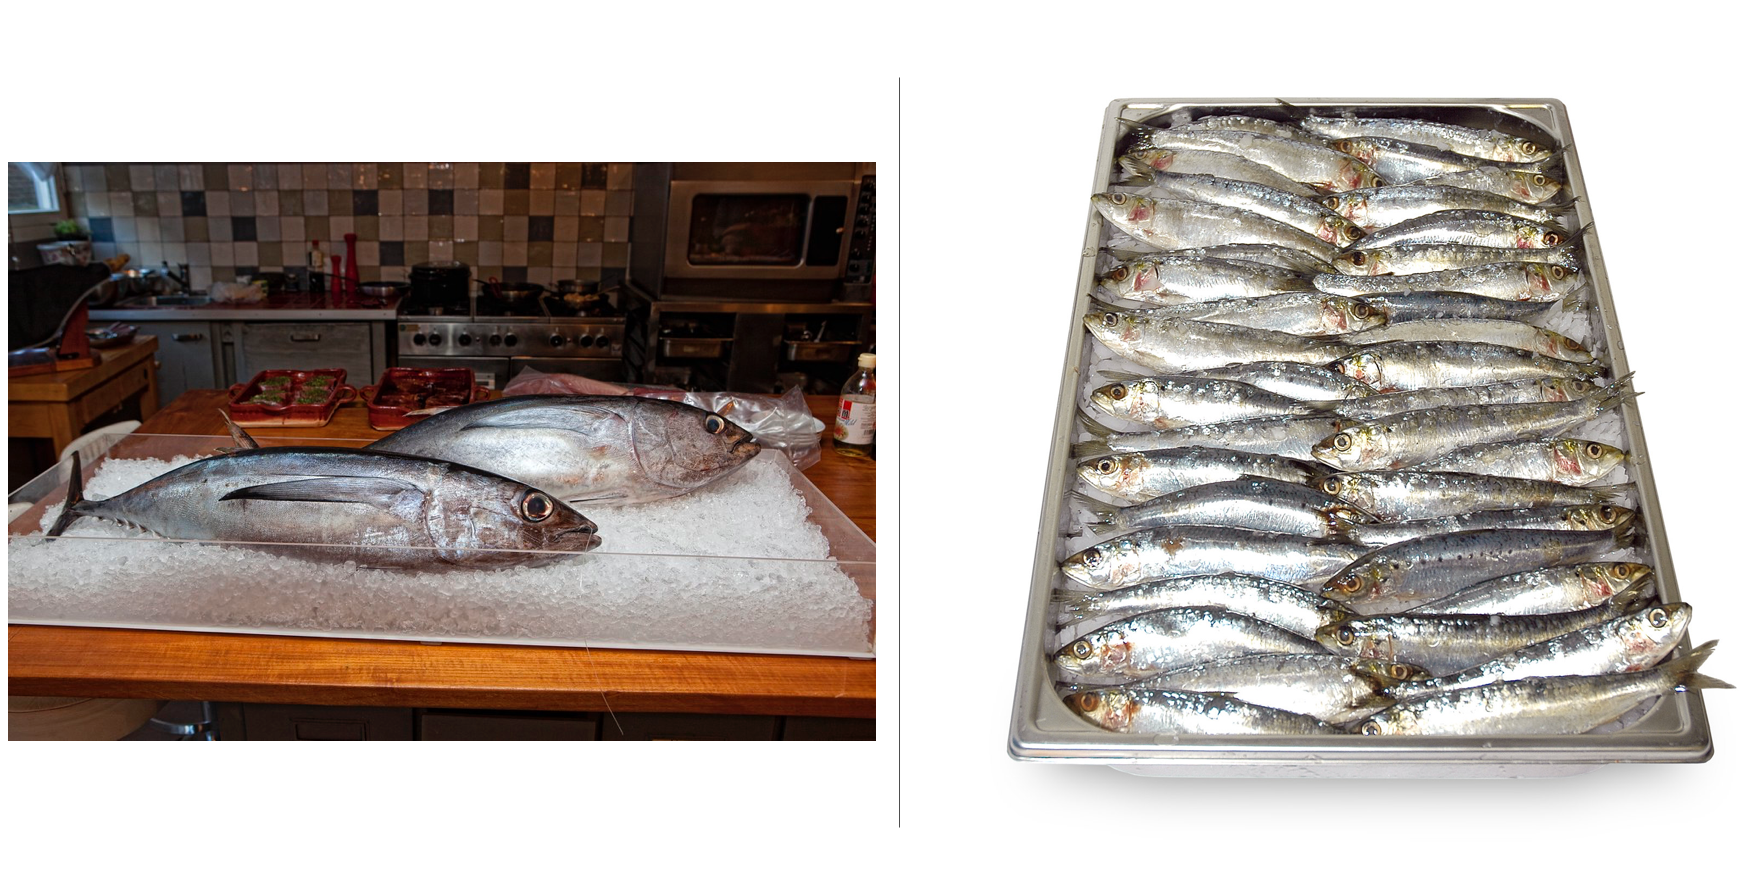 Twee afbeeldingen van vissoorten die gevoelig zijn voor histamine. Links tonijn op ijs, rechts sardines op ijs.